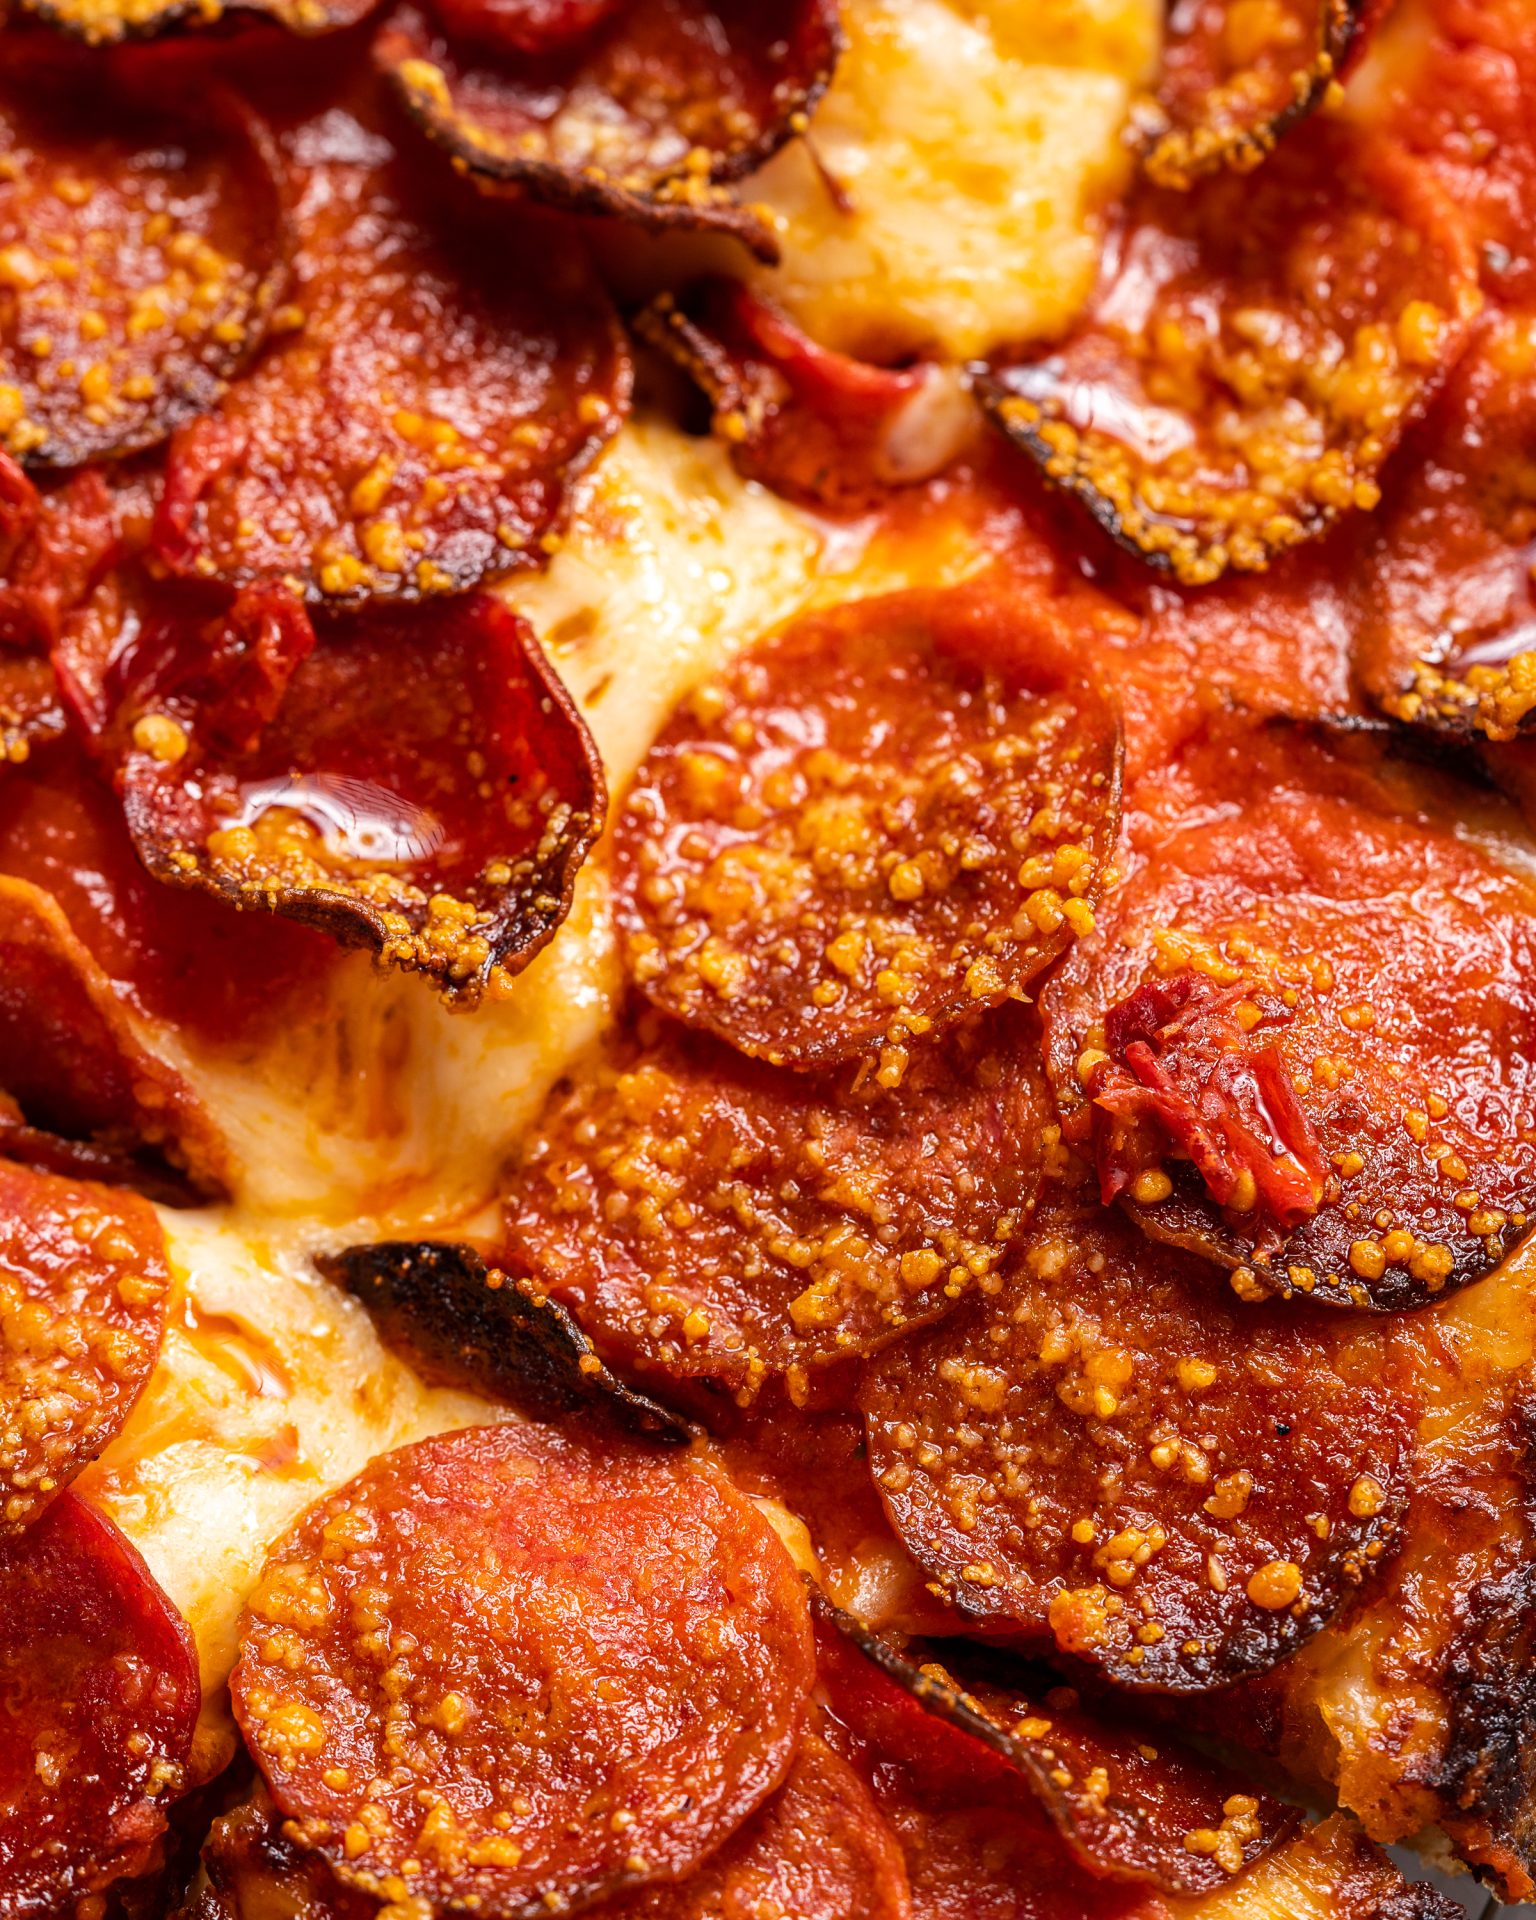 بيتزا روني اوفر لود الايطالية من مطعم إيمي سكويرد بيتزا - تجربة طعام فاخرة في نادي جدة لليخوت